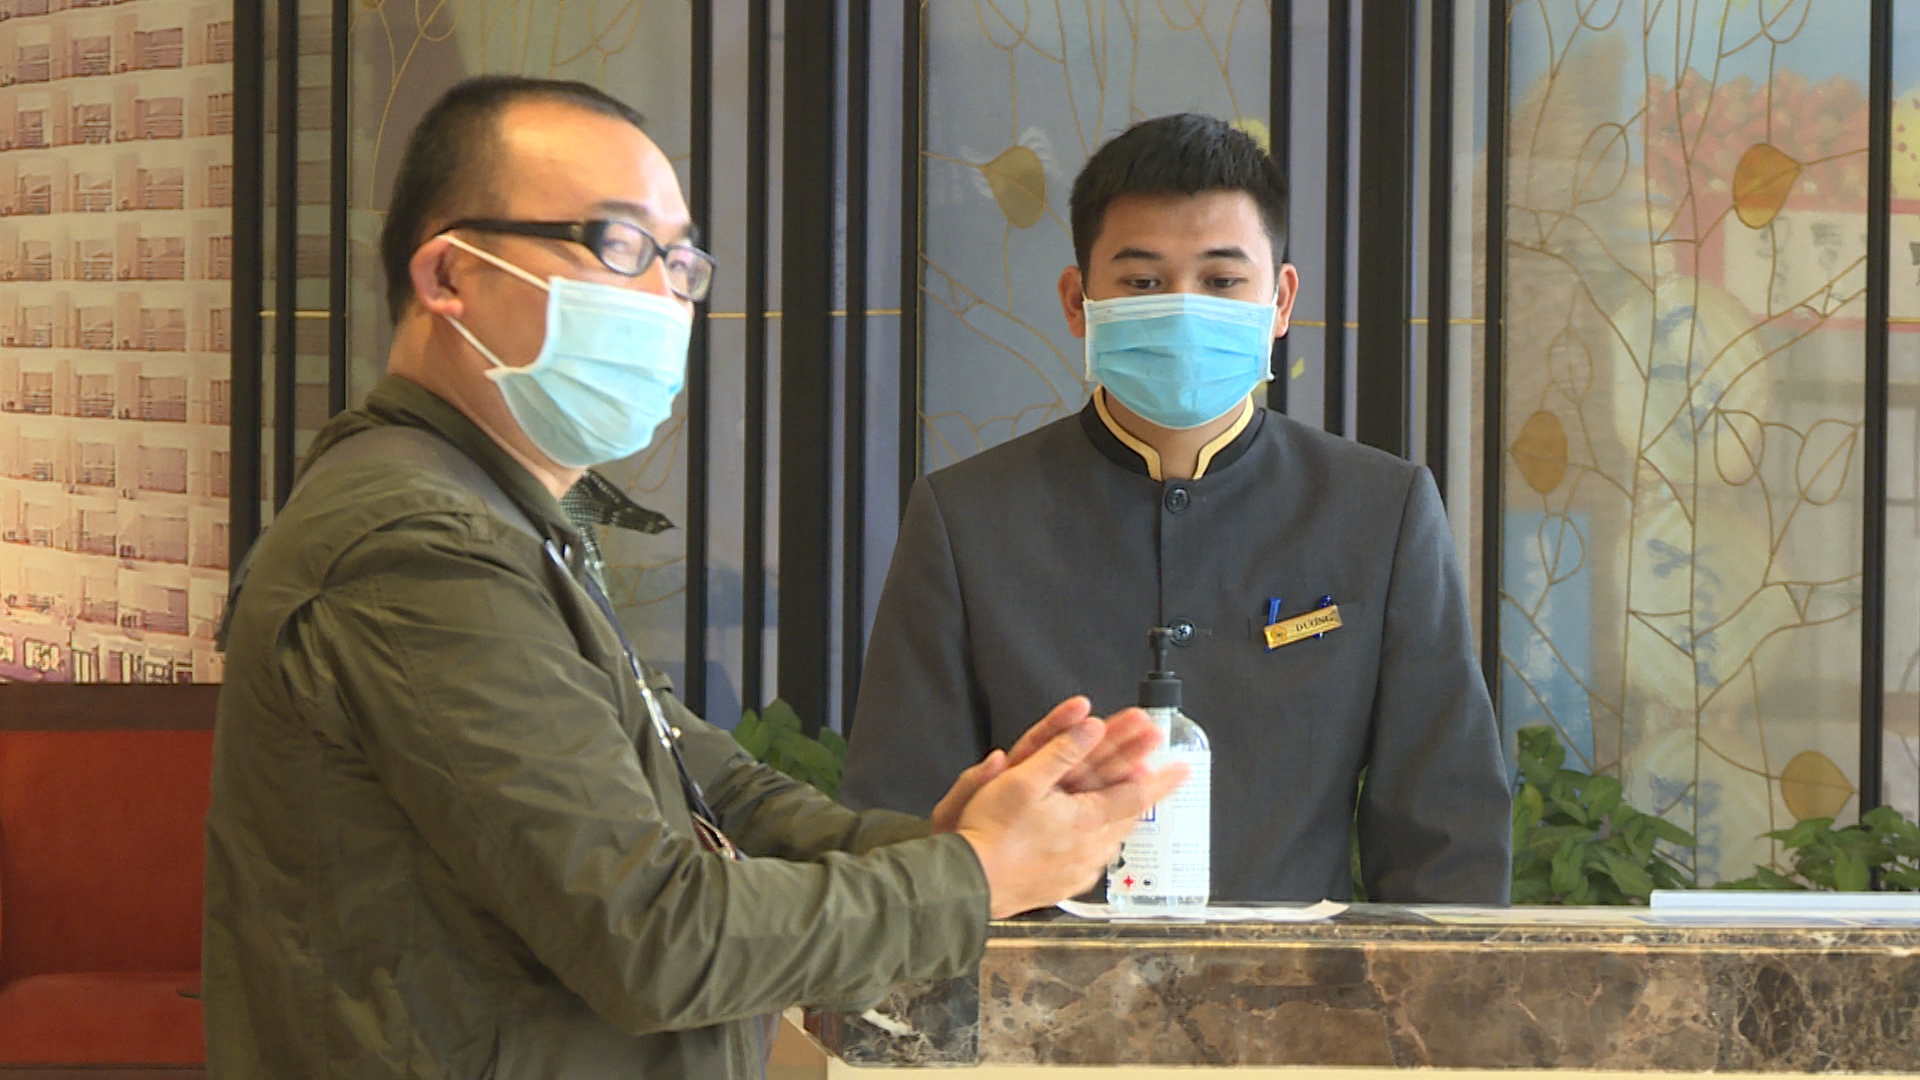 Nhân viên Khách sạn Sài Gòn-Hạ Long đeo khẩu trang khi làm việc, tiếp xúc với khách hàng.